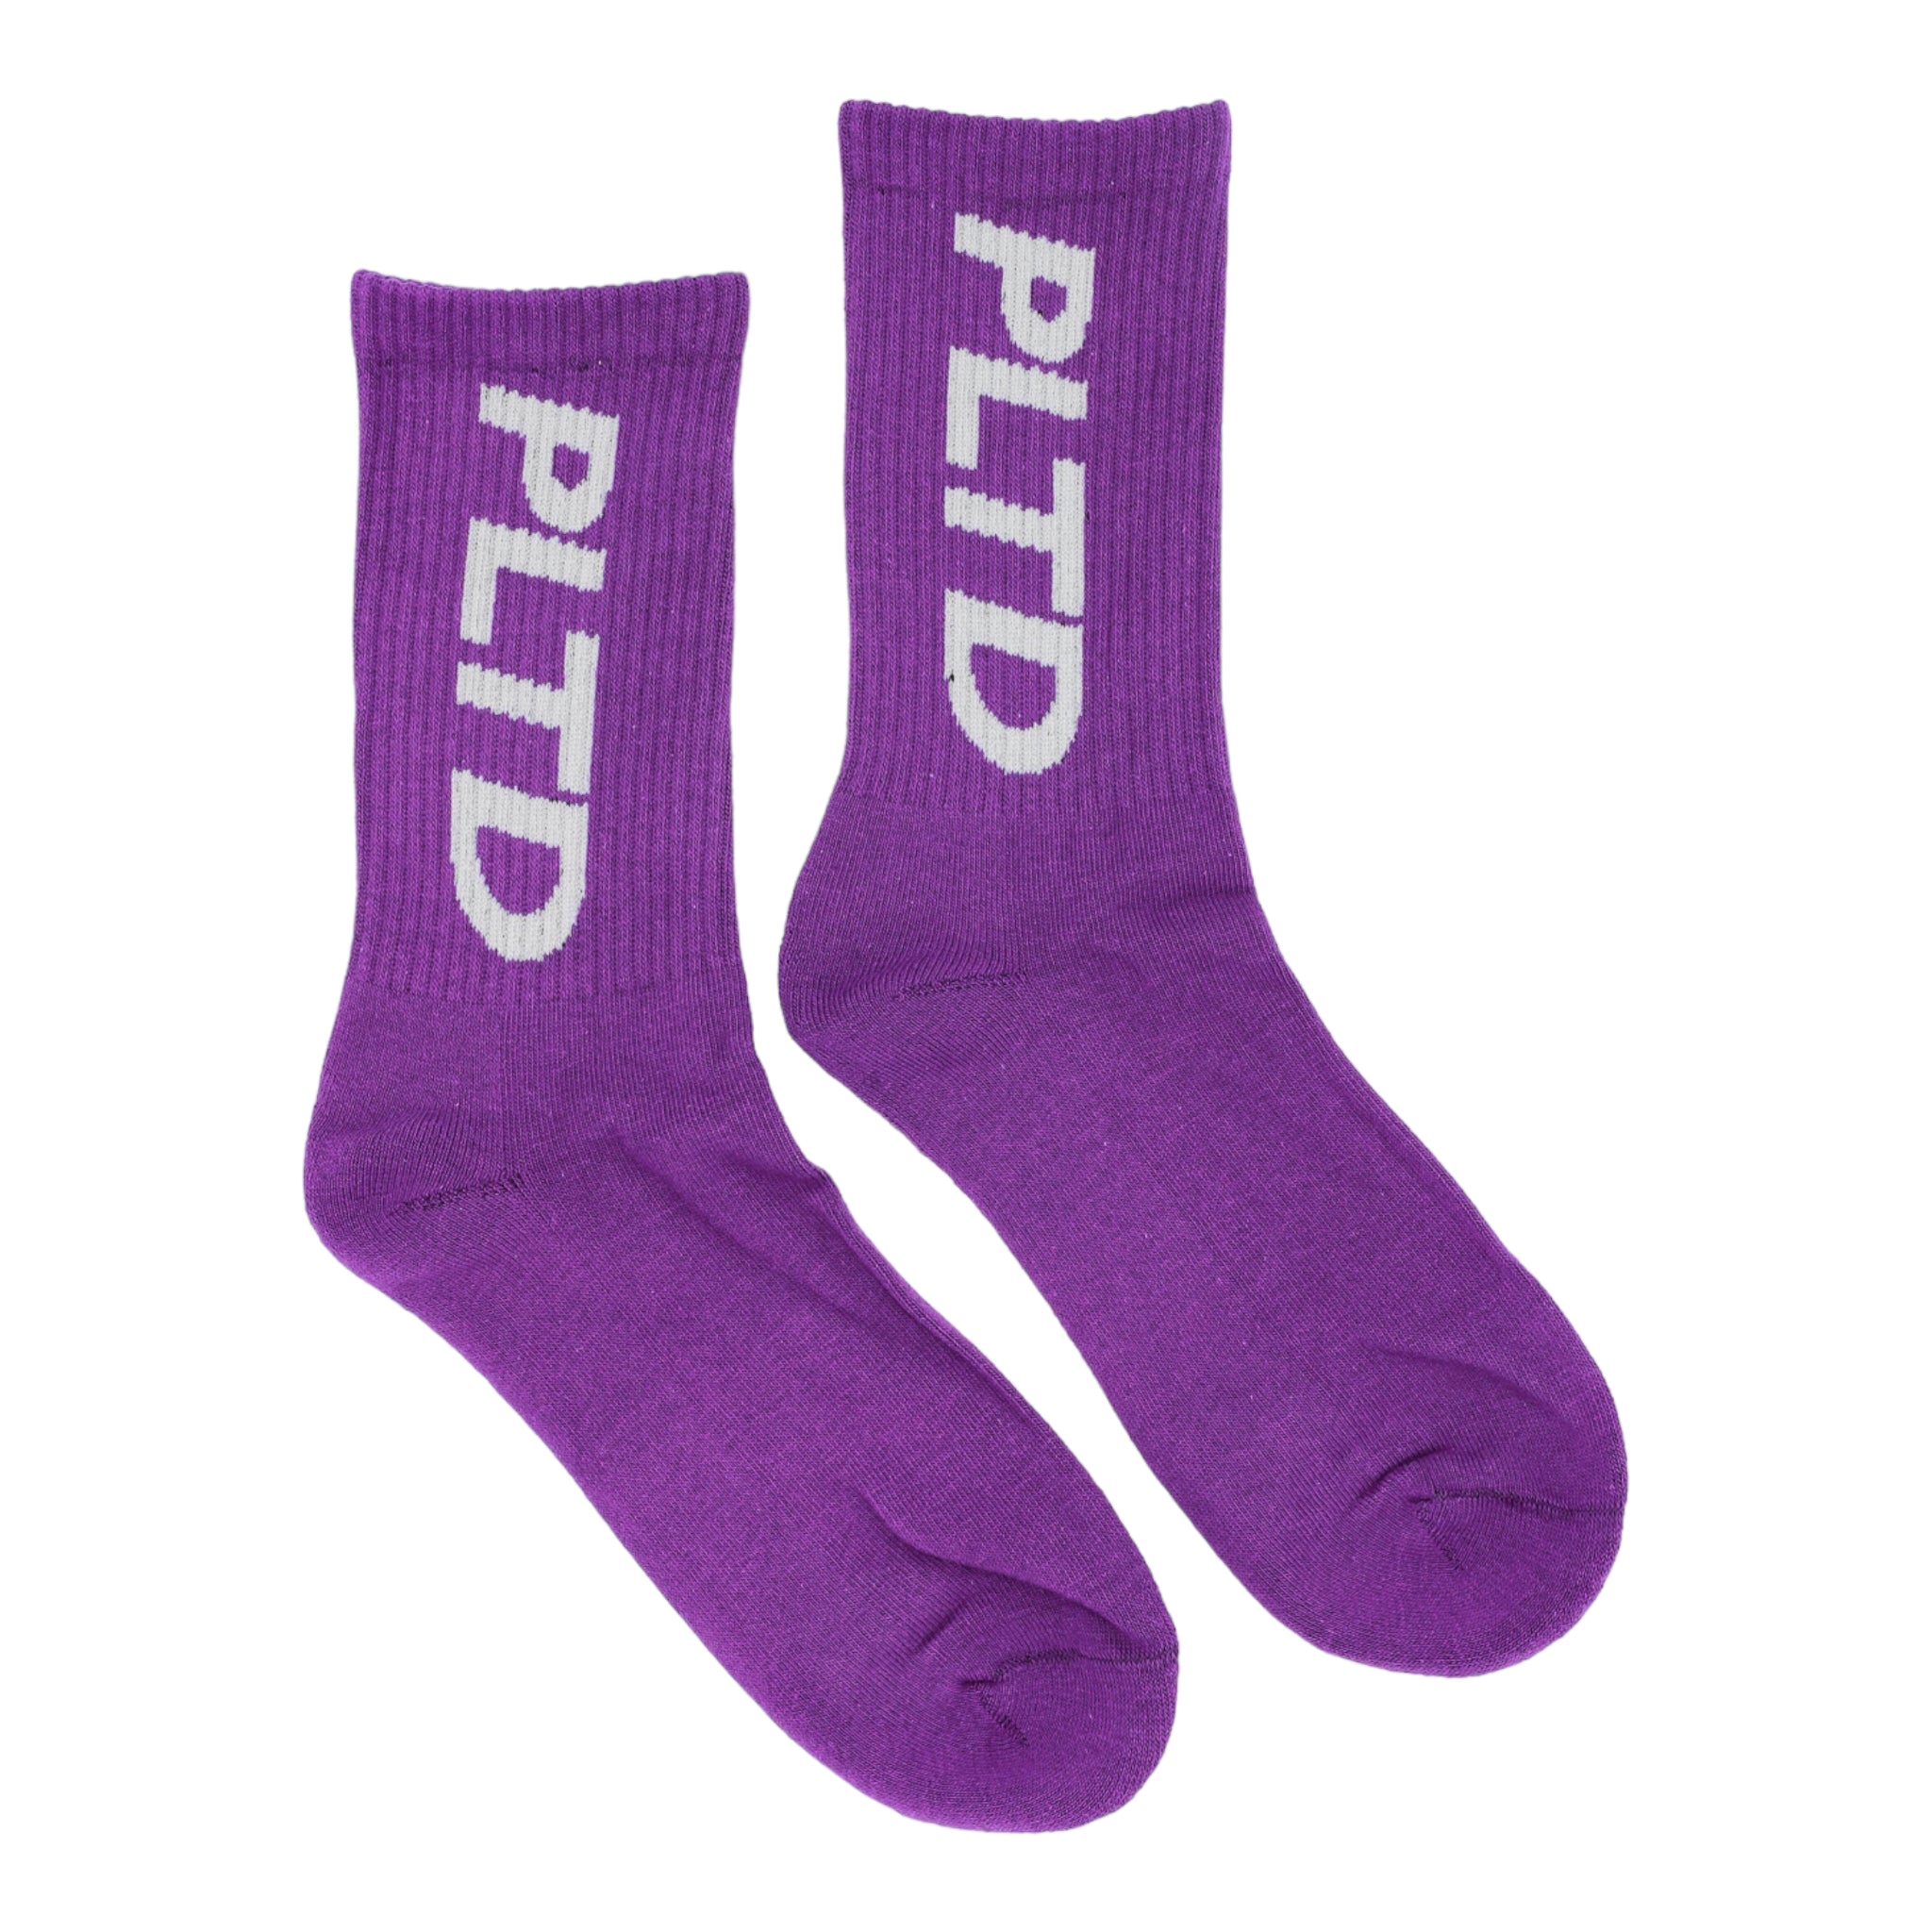 Team PLTD - Barney Terry Cloth Socks